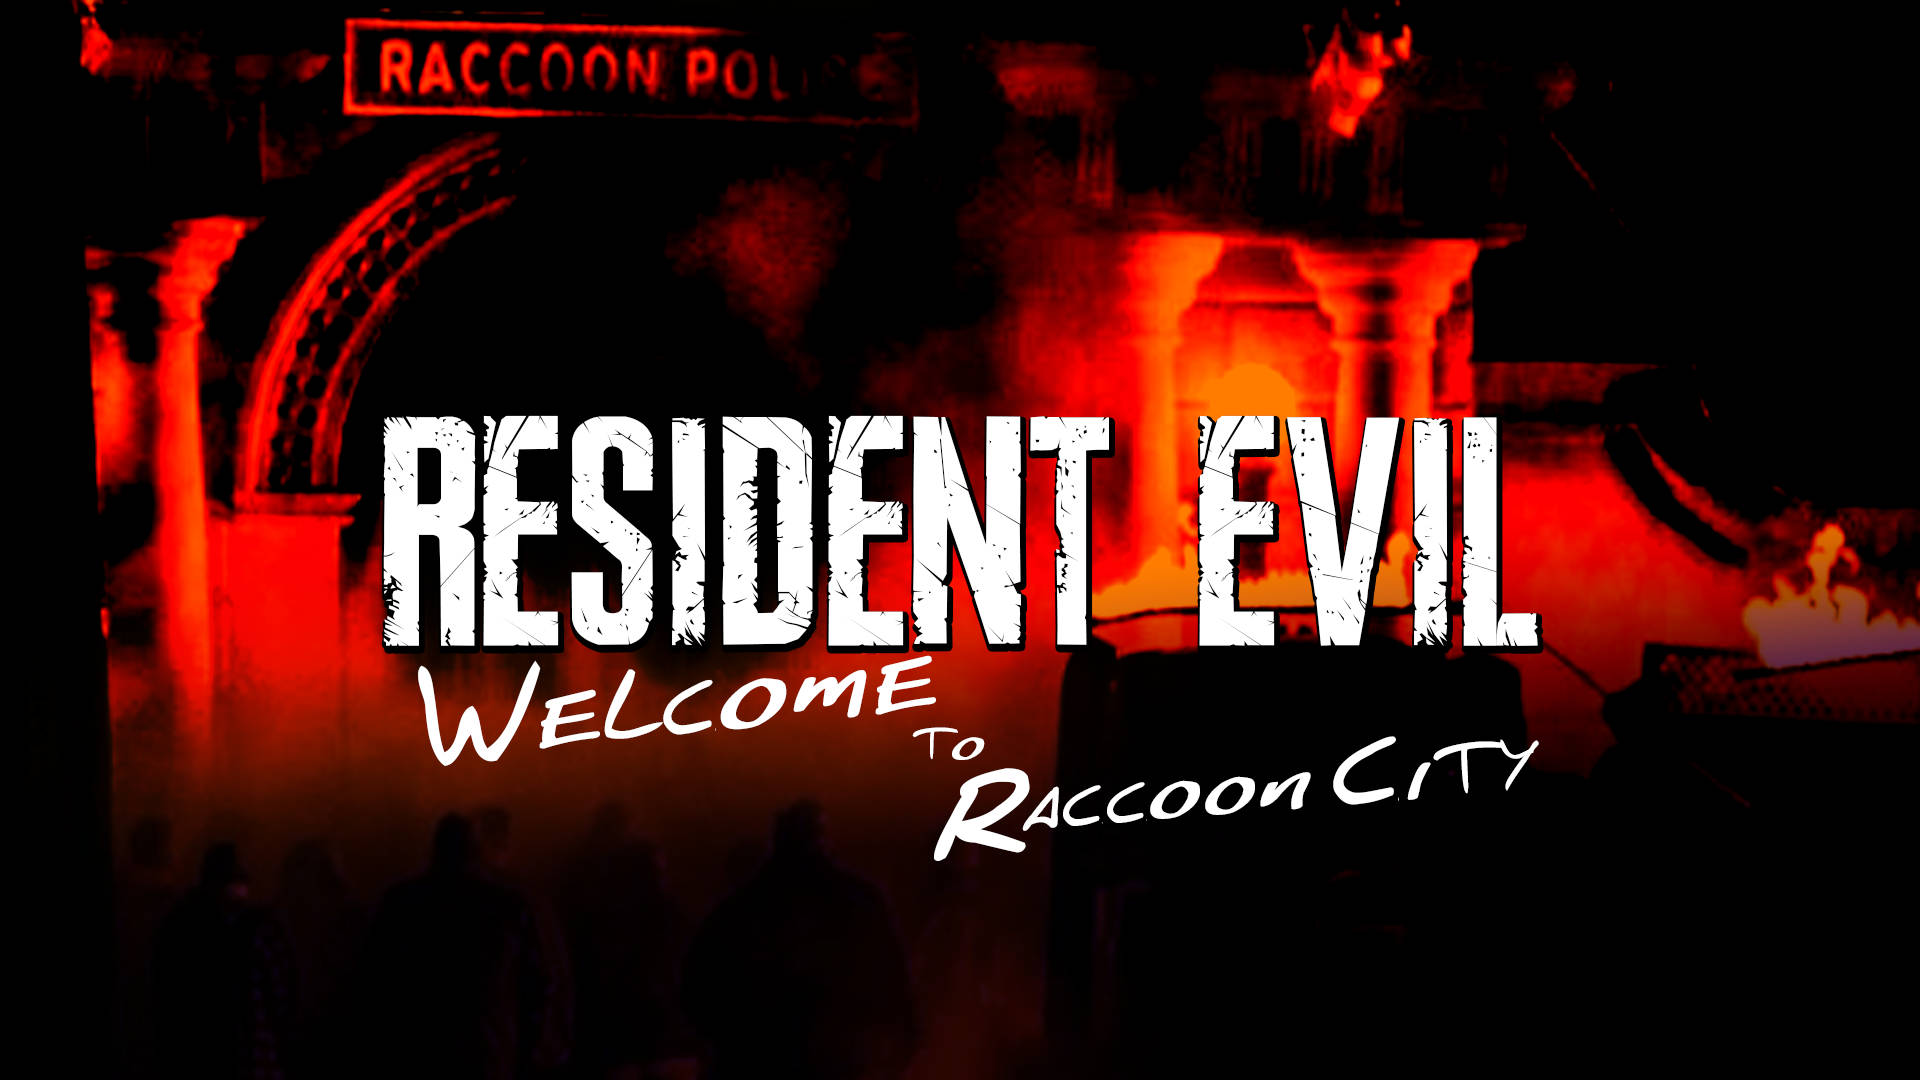 Residentevil Bienvenido A Raccoon City Monocromo Fondo de pantalla